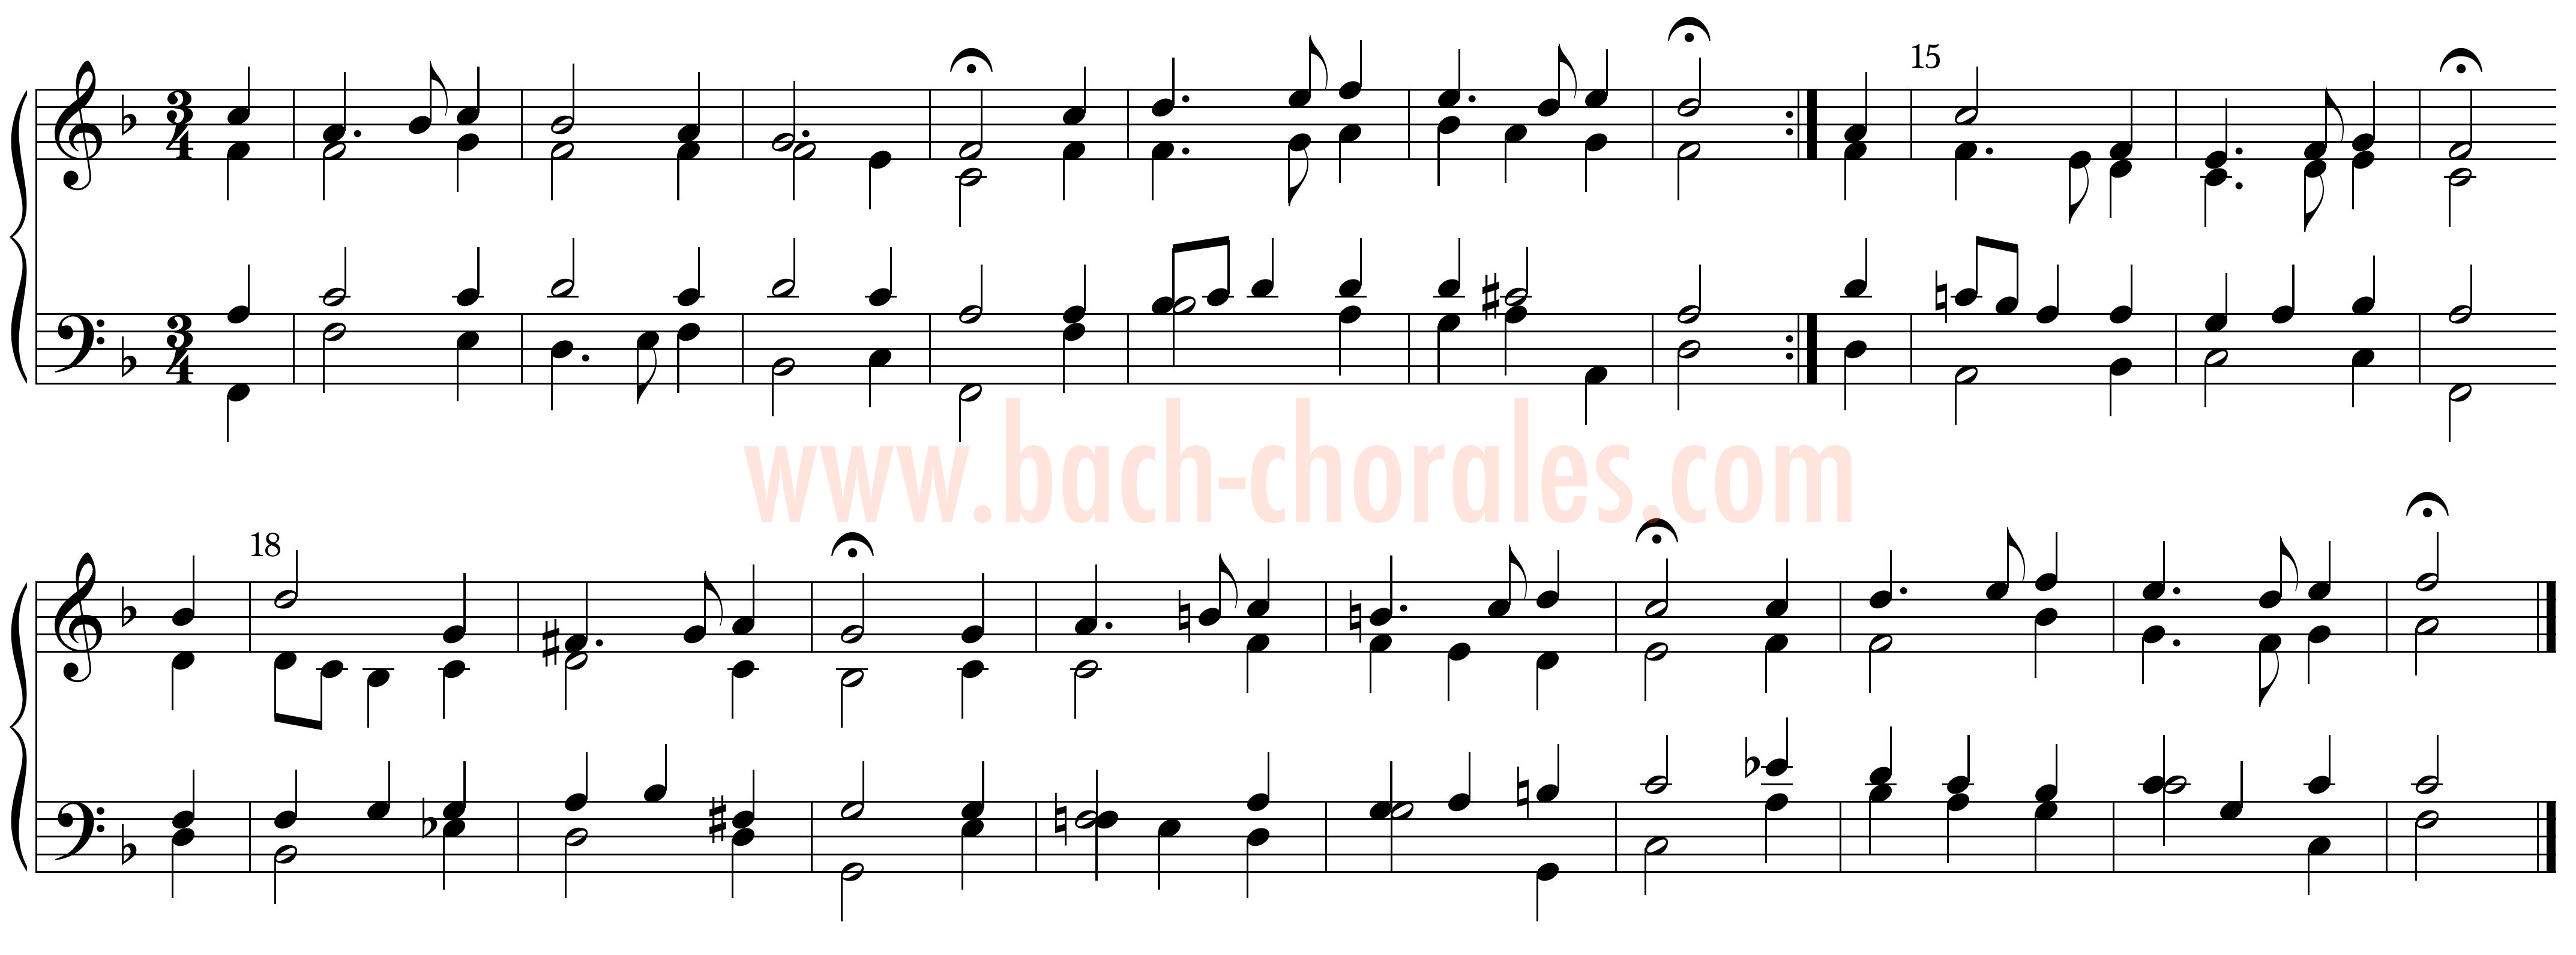 notenbeeld BWV 441 op https://www.bach-chorales.com/